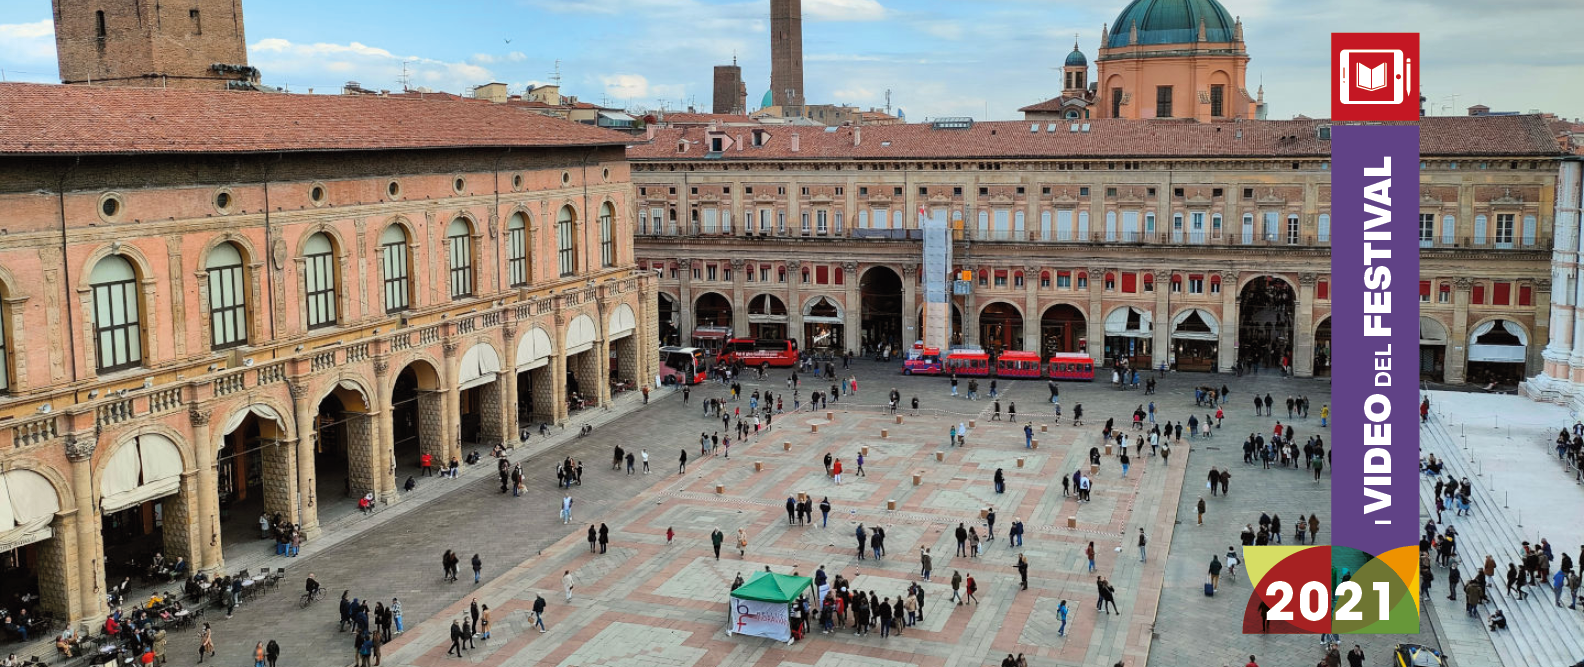 CodyMaze ha trasformato il Crescentone di Piazza Maggiore in un labirinto virtuale